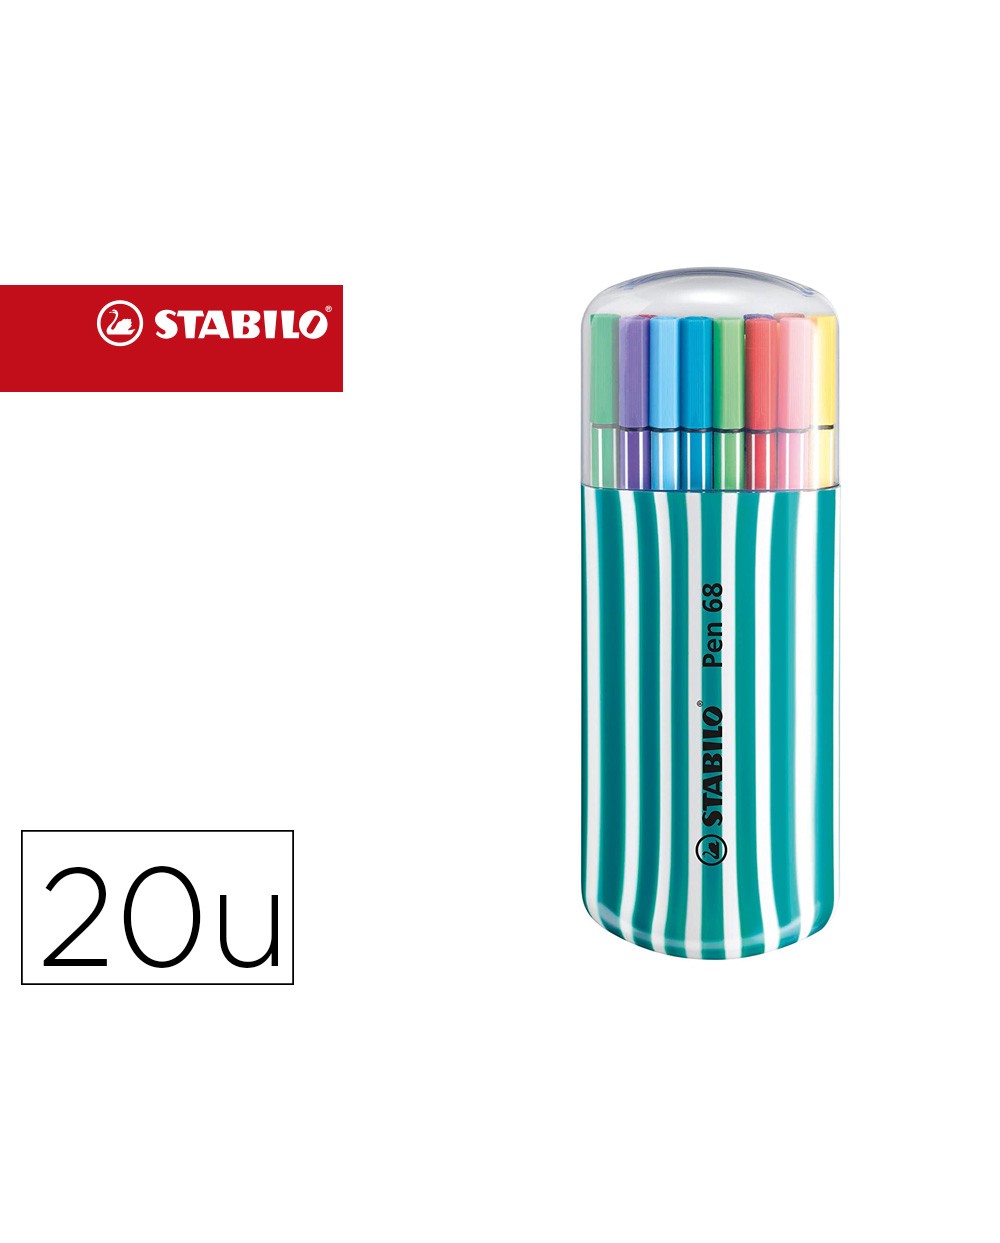 Rotulador stabilo punta de fibra pen 68 zebrui turquesa estuche de 20 unidades colores surtidos